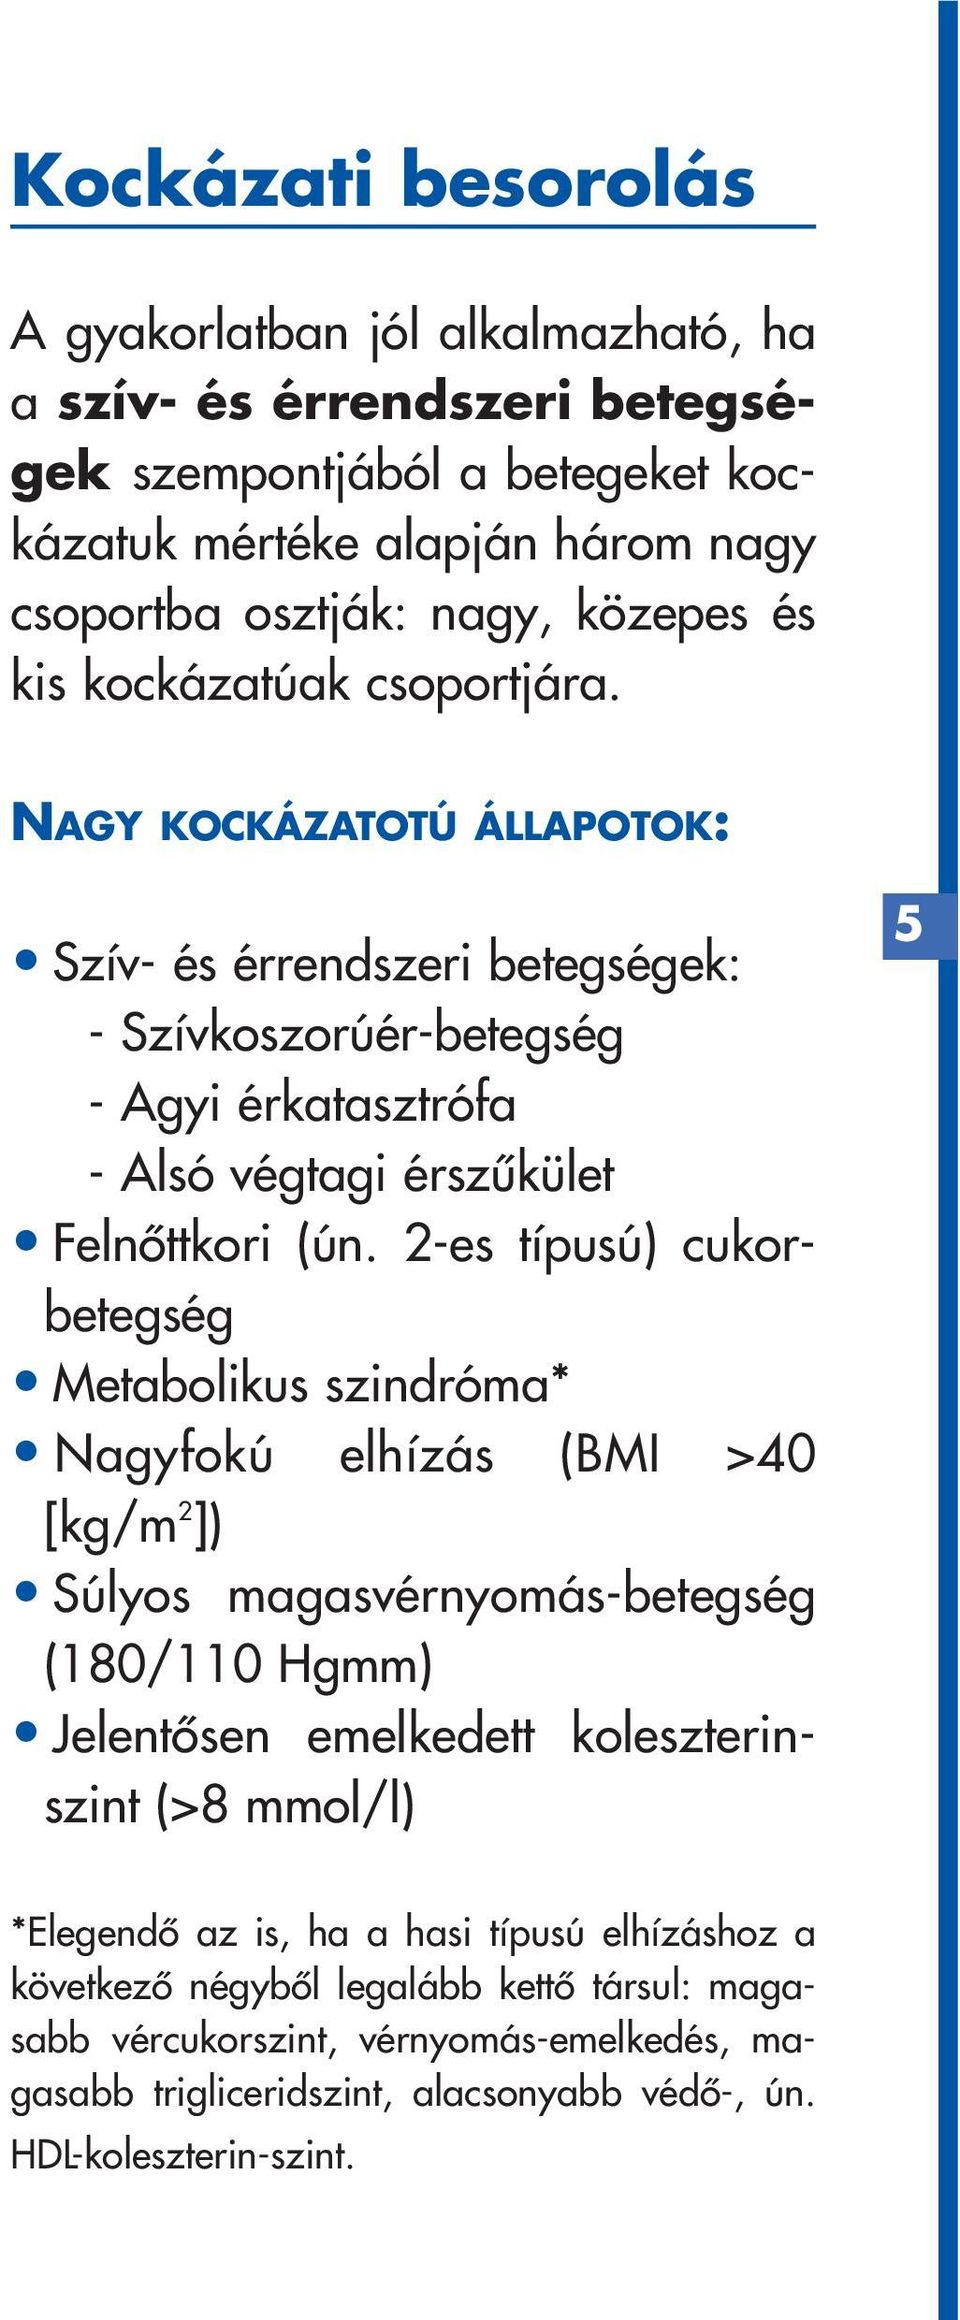 2-es típusú) cukorbetegség Metabolikus szindróma* Nagyfokú elhízás (BMI >40 [kg/m 2 ]) Súlyos magasvérnyomás-betegség (180/110 Hgmm) Jelentôsen emelkedett koleszterinszint (>8 mmol/l) 5